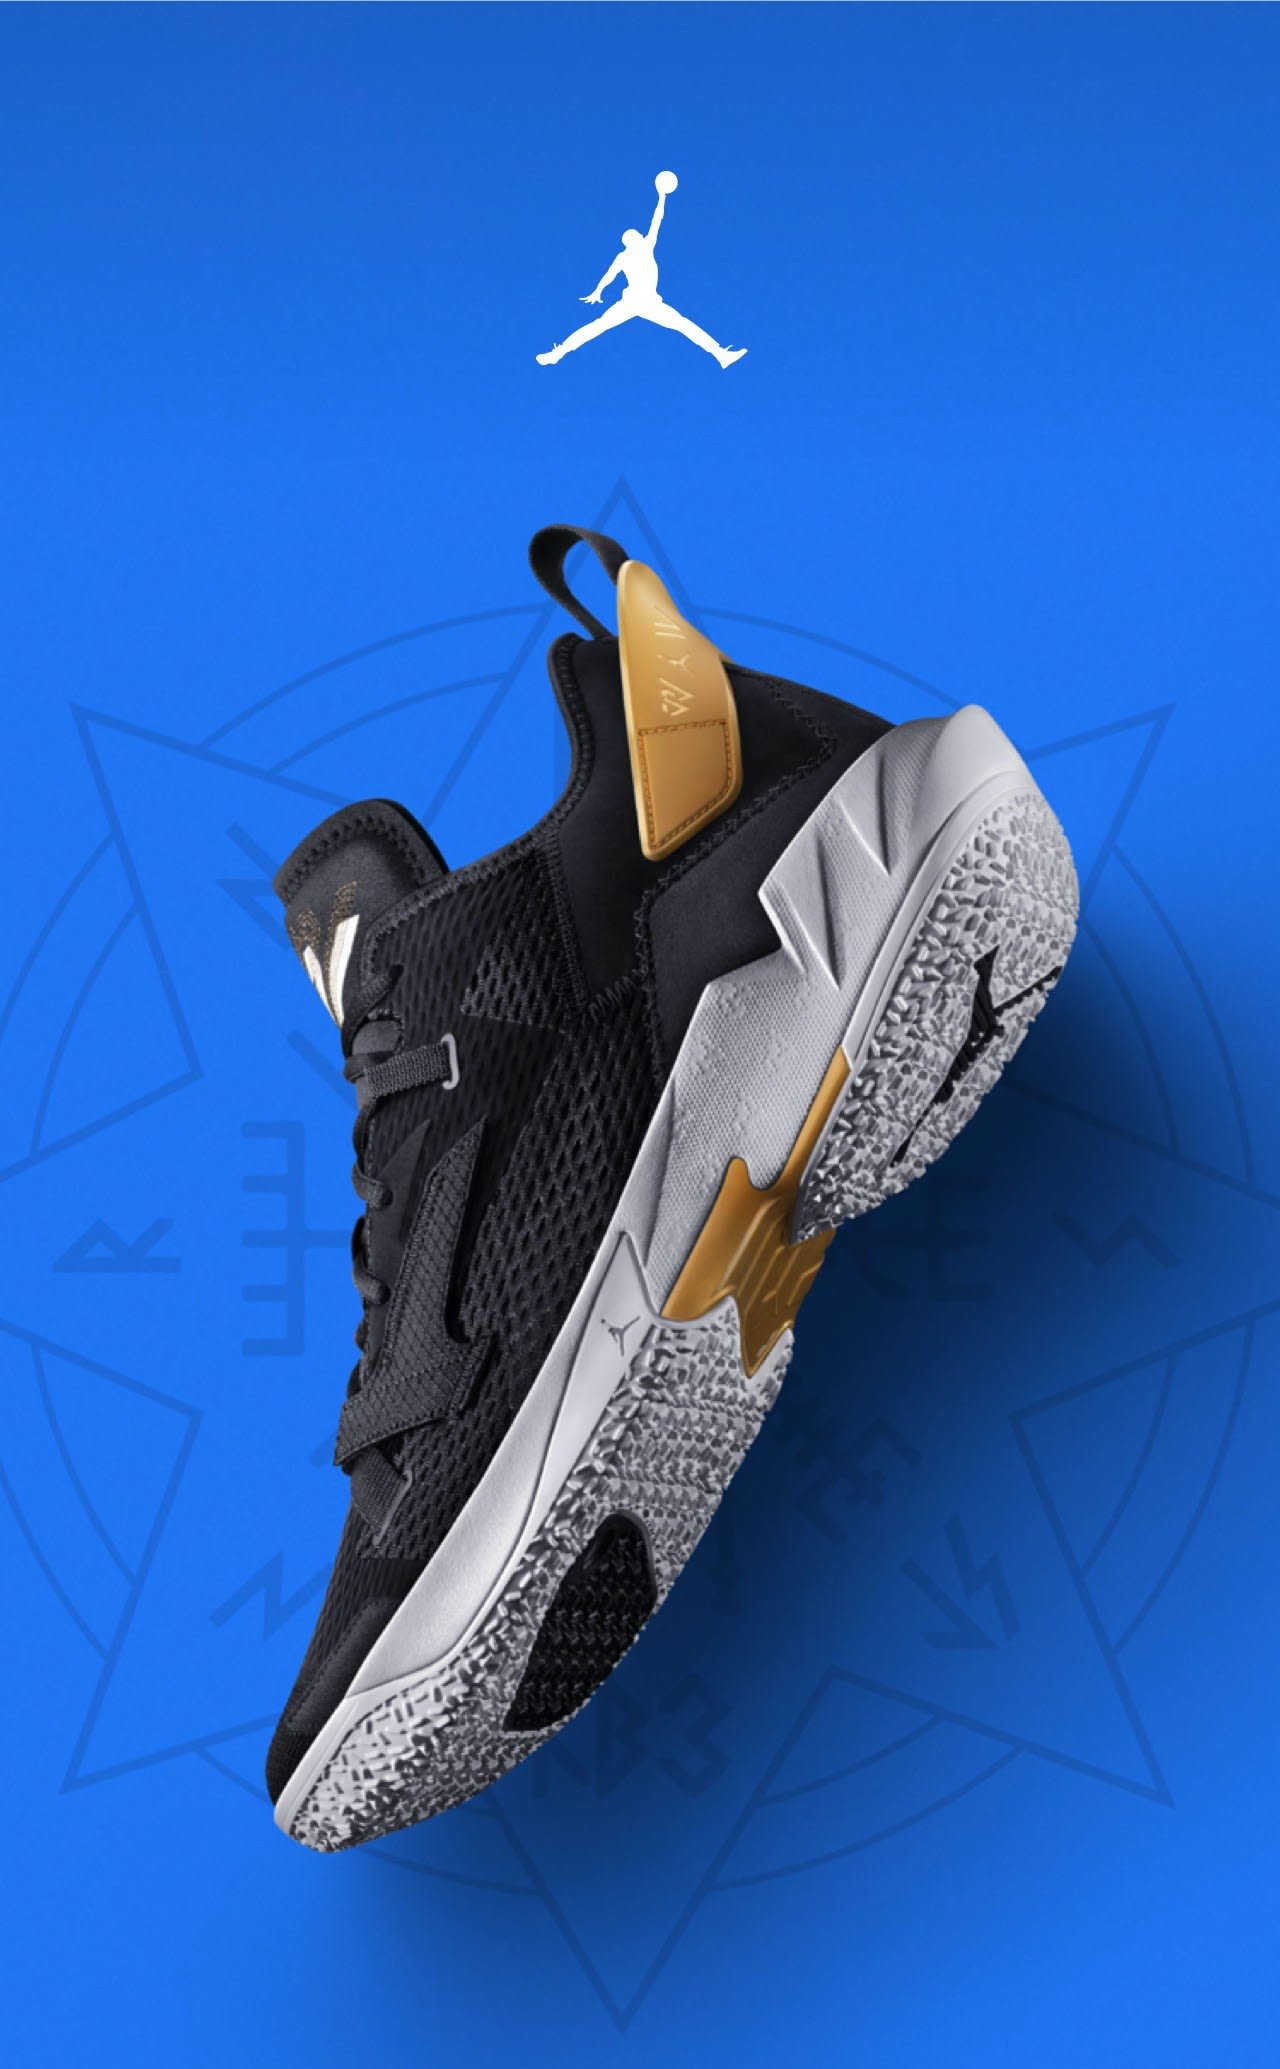 Nike: Jordan “Why Not?” Zer0.4 'Family' | Milled